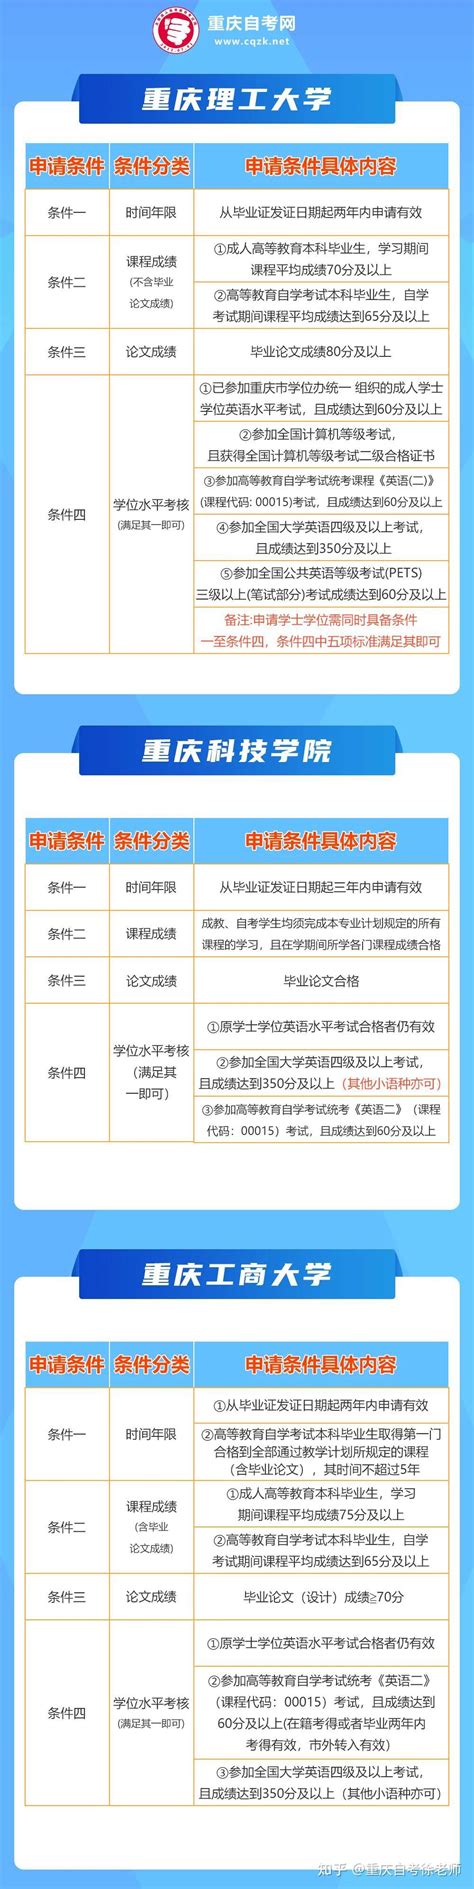 重庆大学城市科技学院自考学士学位申请条件_学士学位_重庆继续教育网